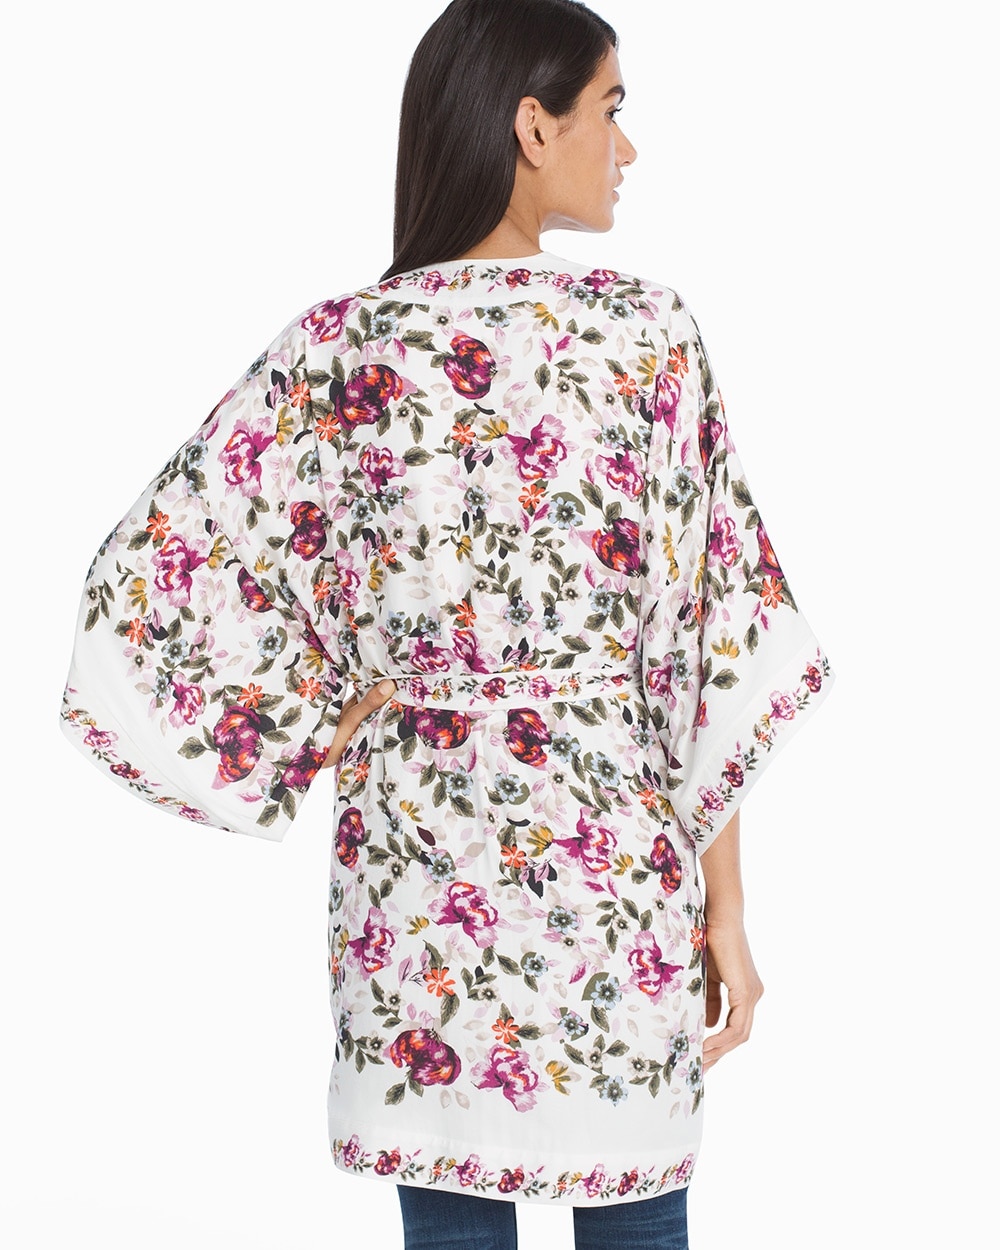 Floral Printed Kimono - White House Black Market